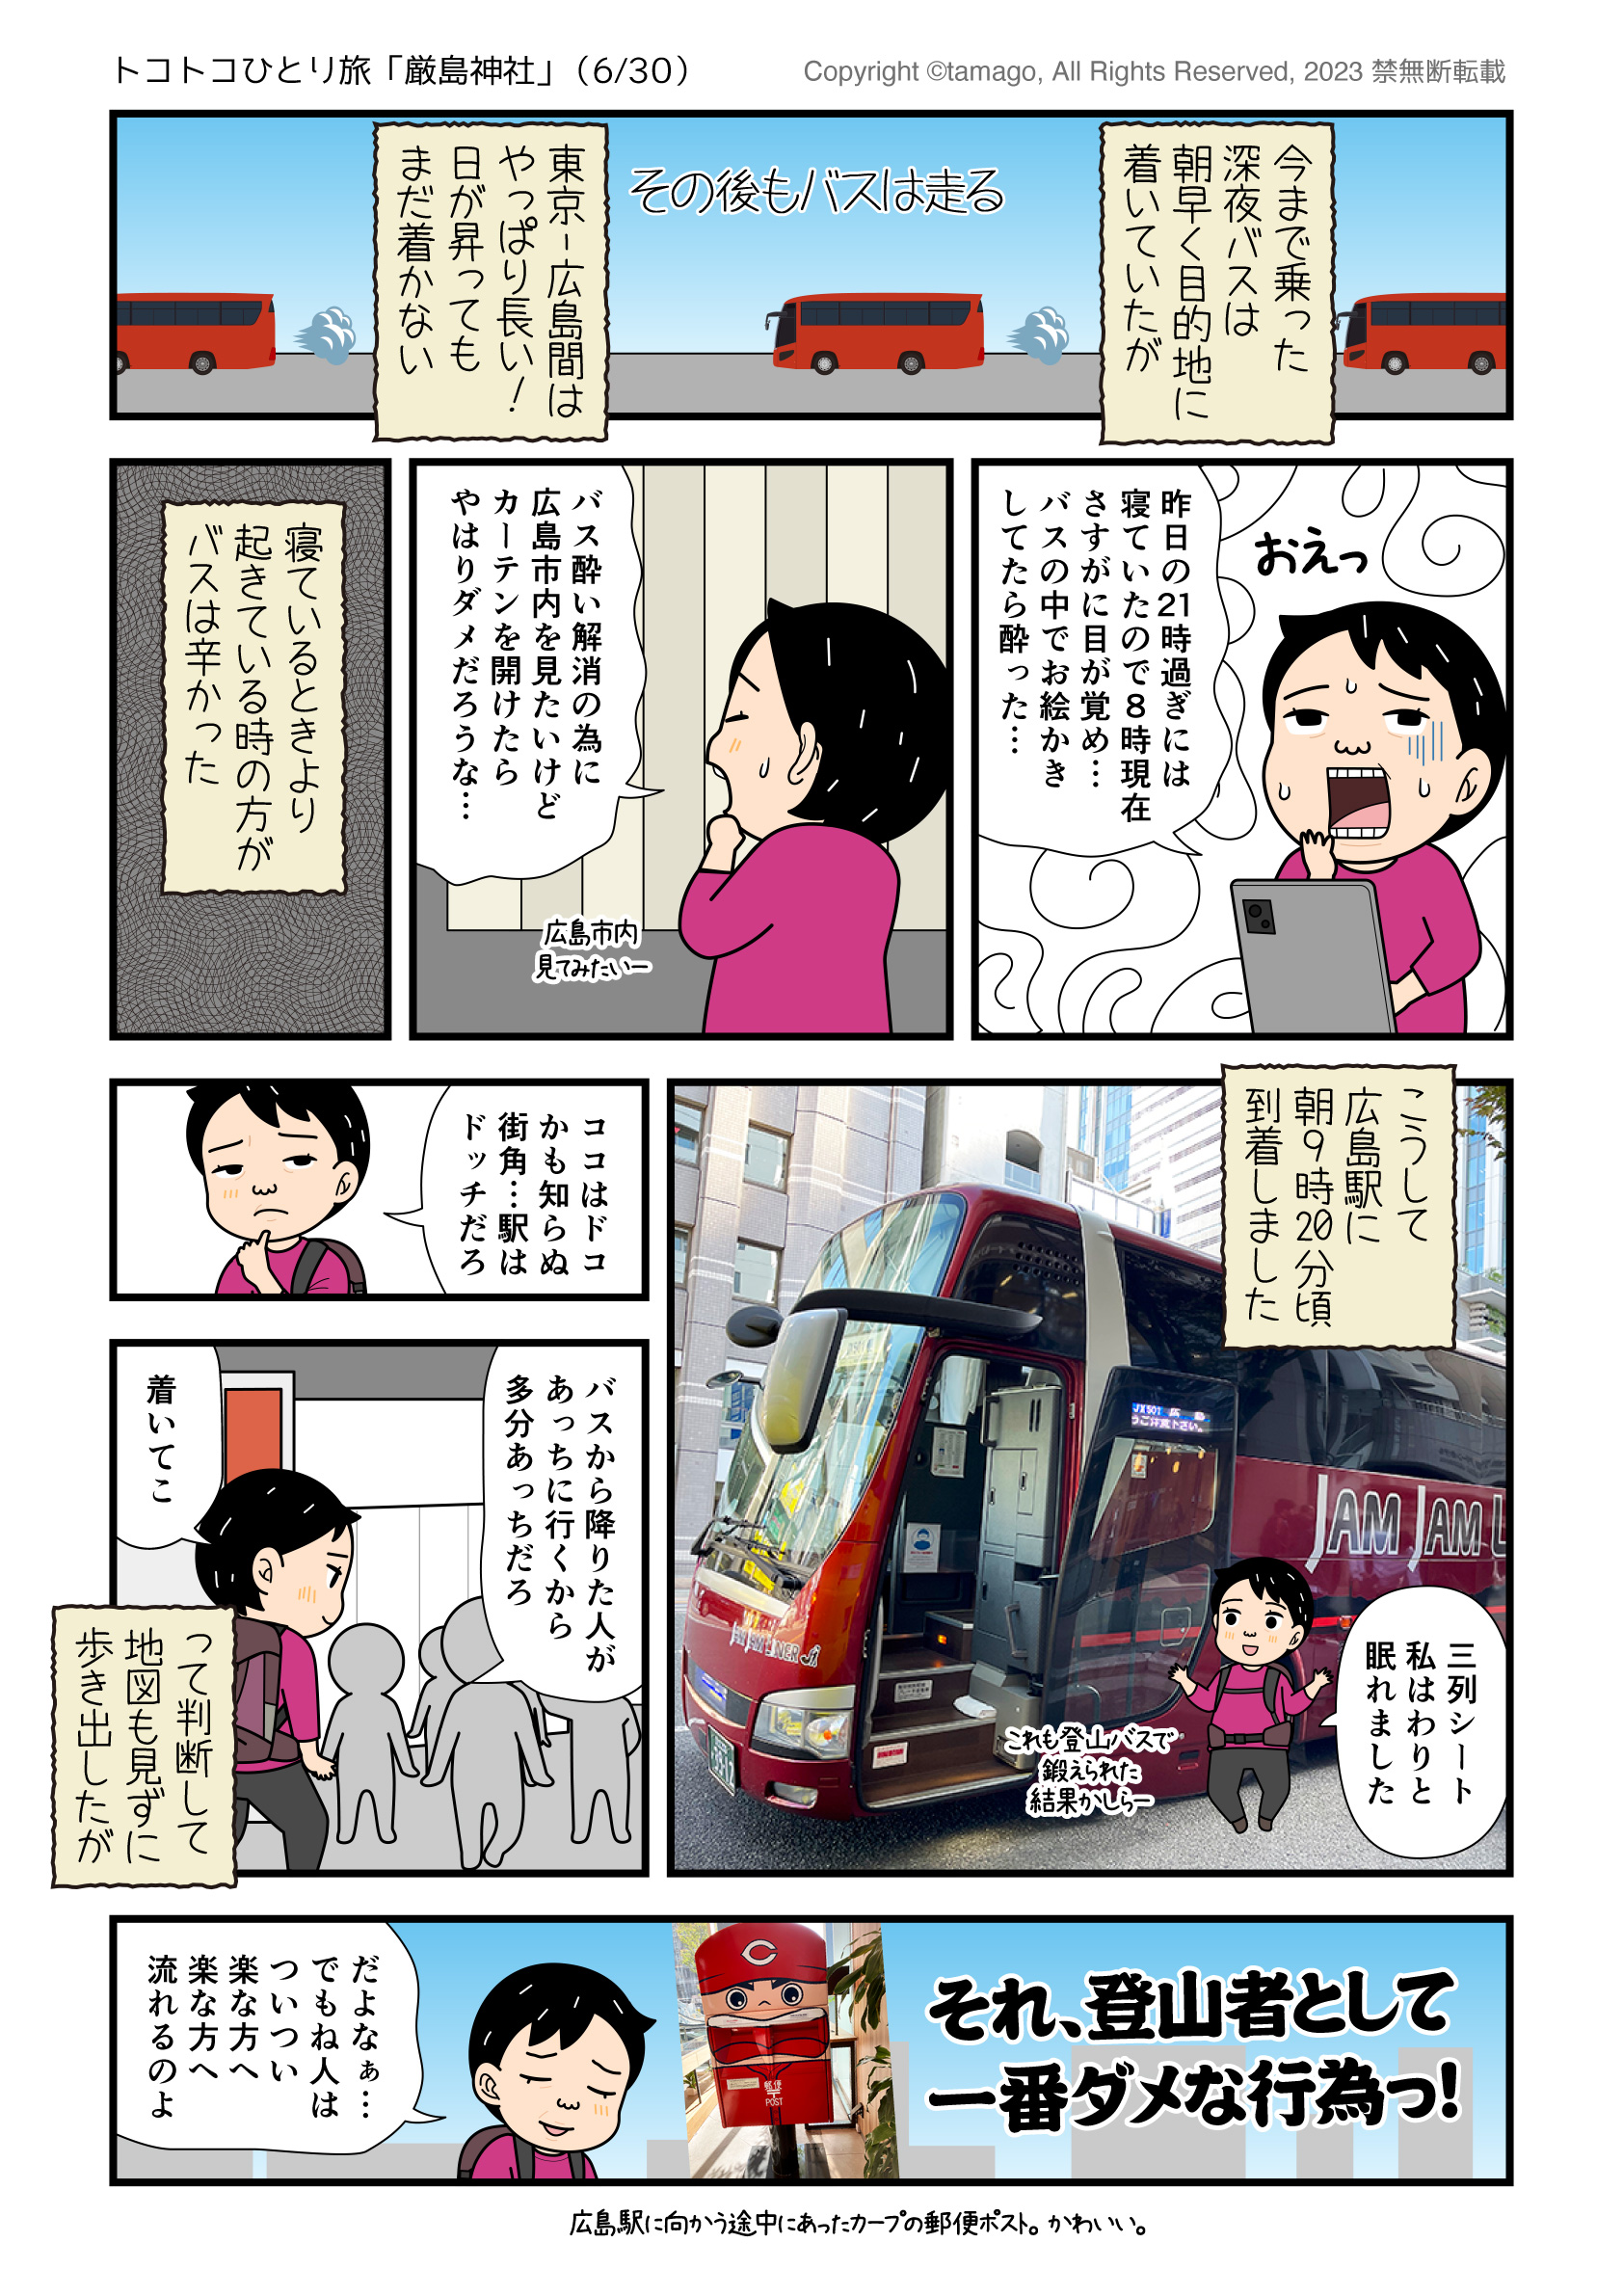 深夜バスで広島駅に着いた漫画